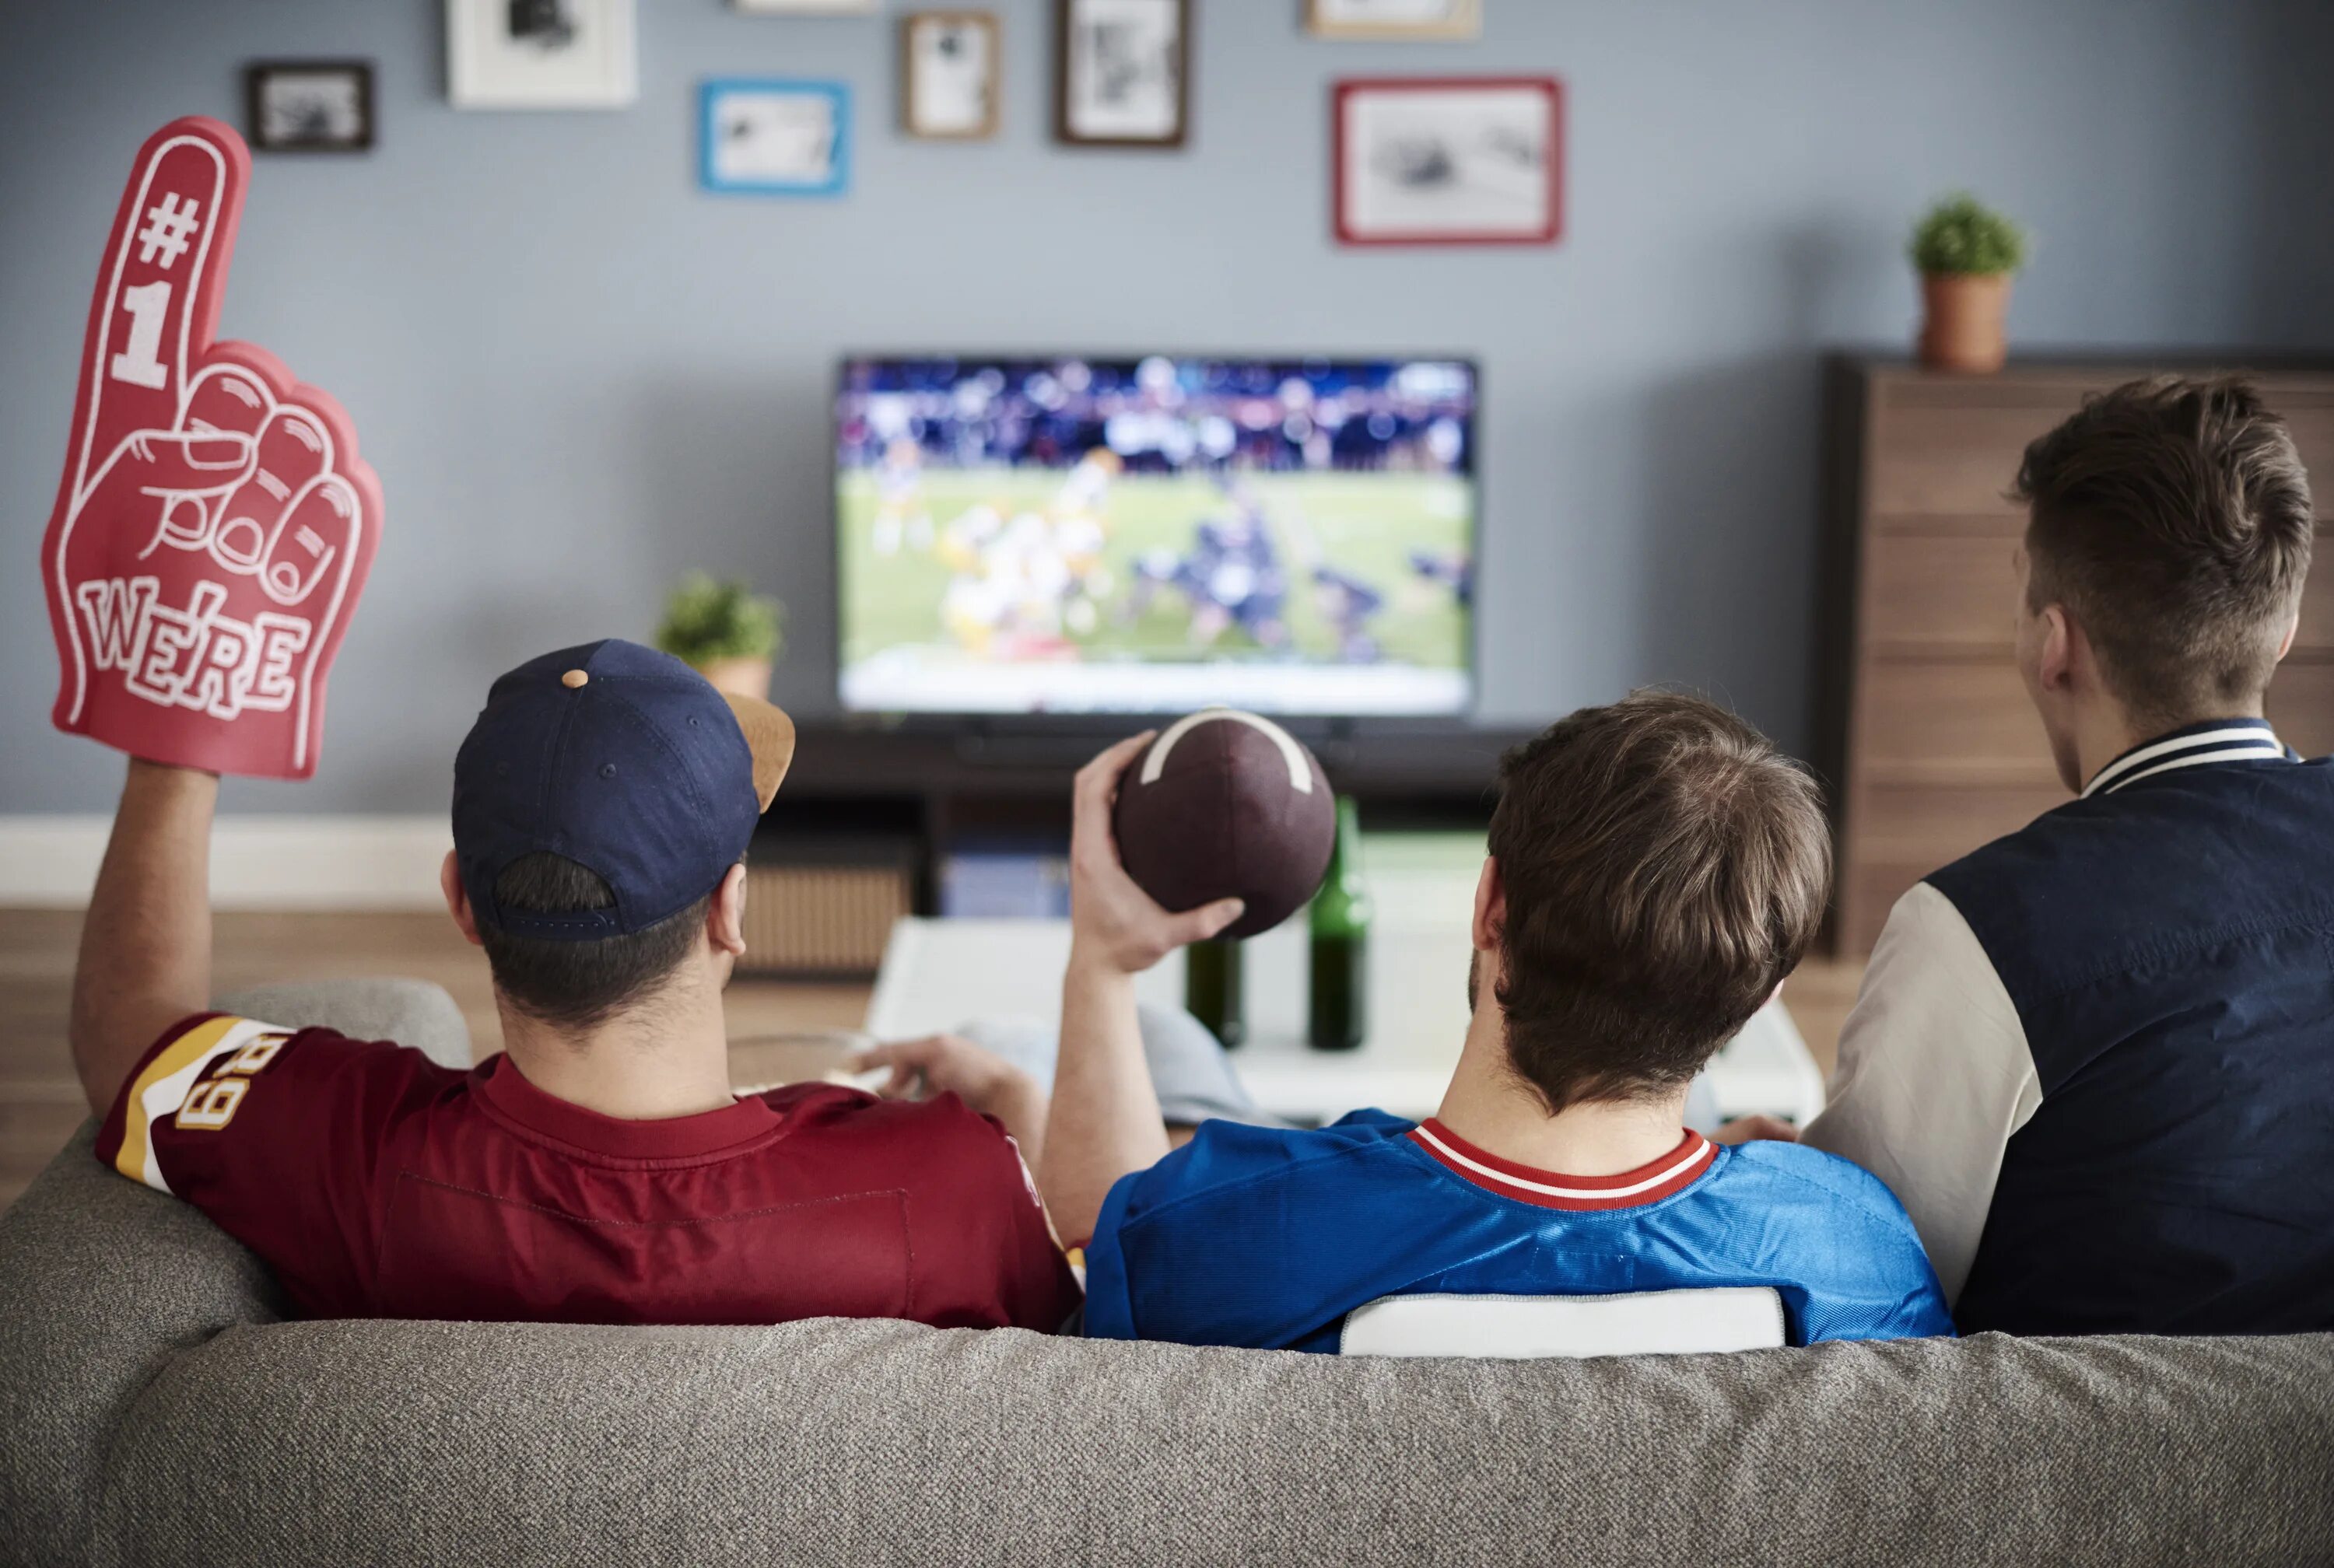 Спорт по телевизору. Банки перед телевизором. Пикник перед телевизором. Люди смотрят матч по телевизору.